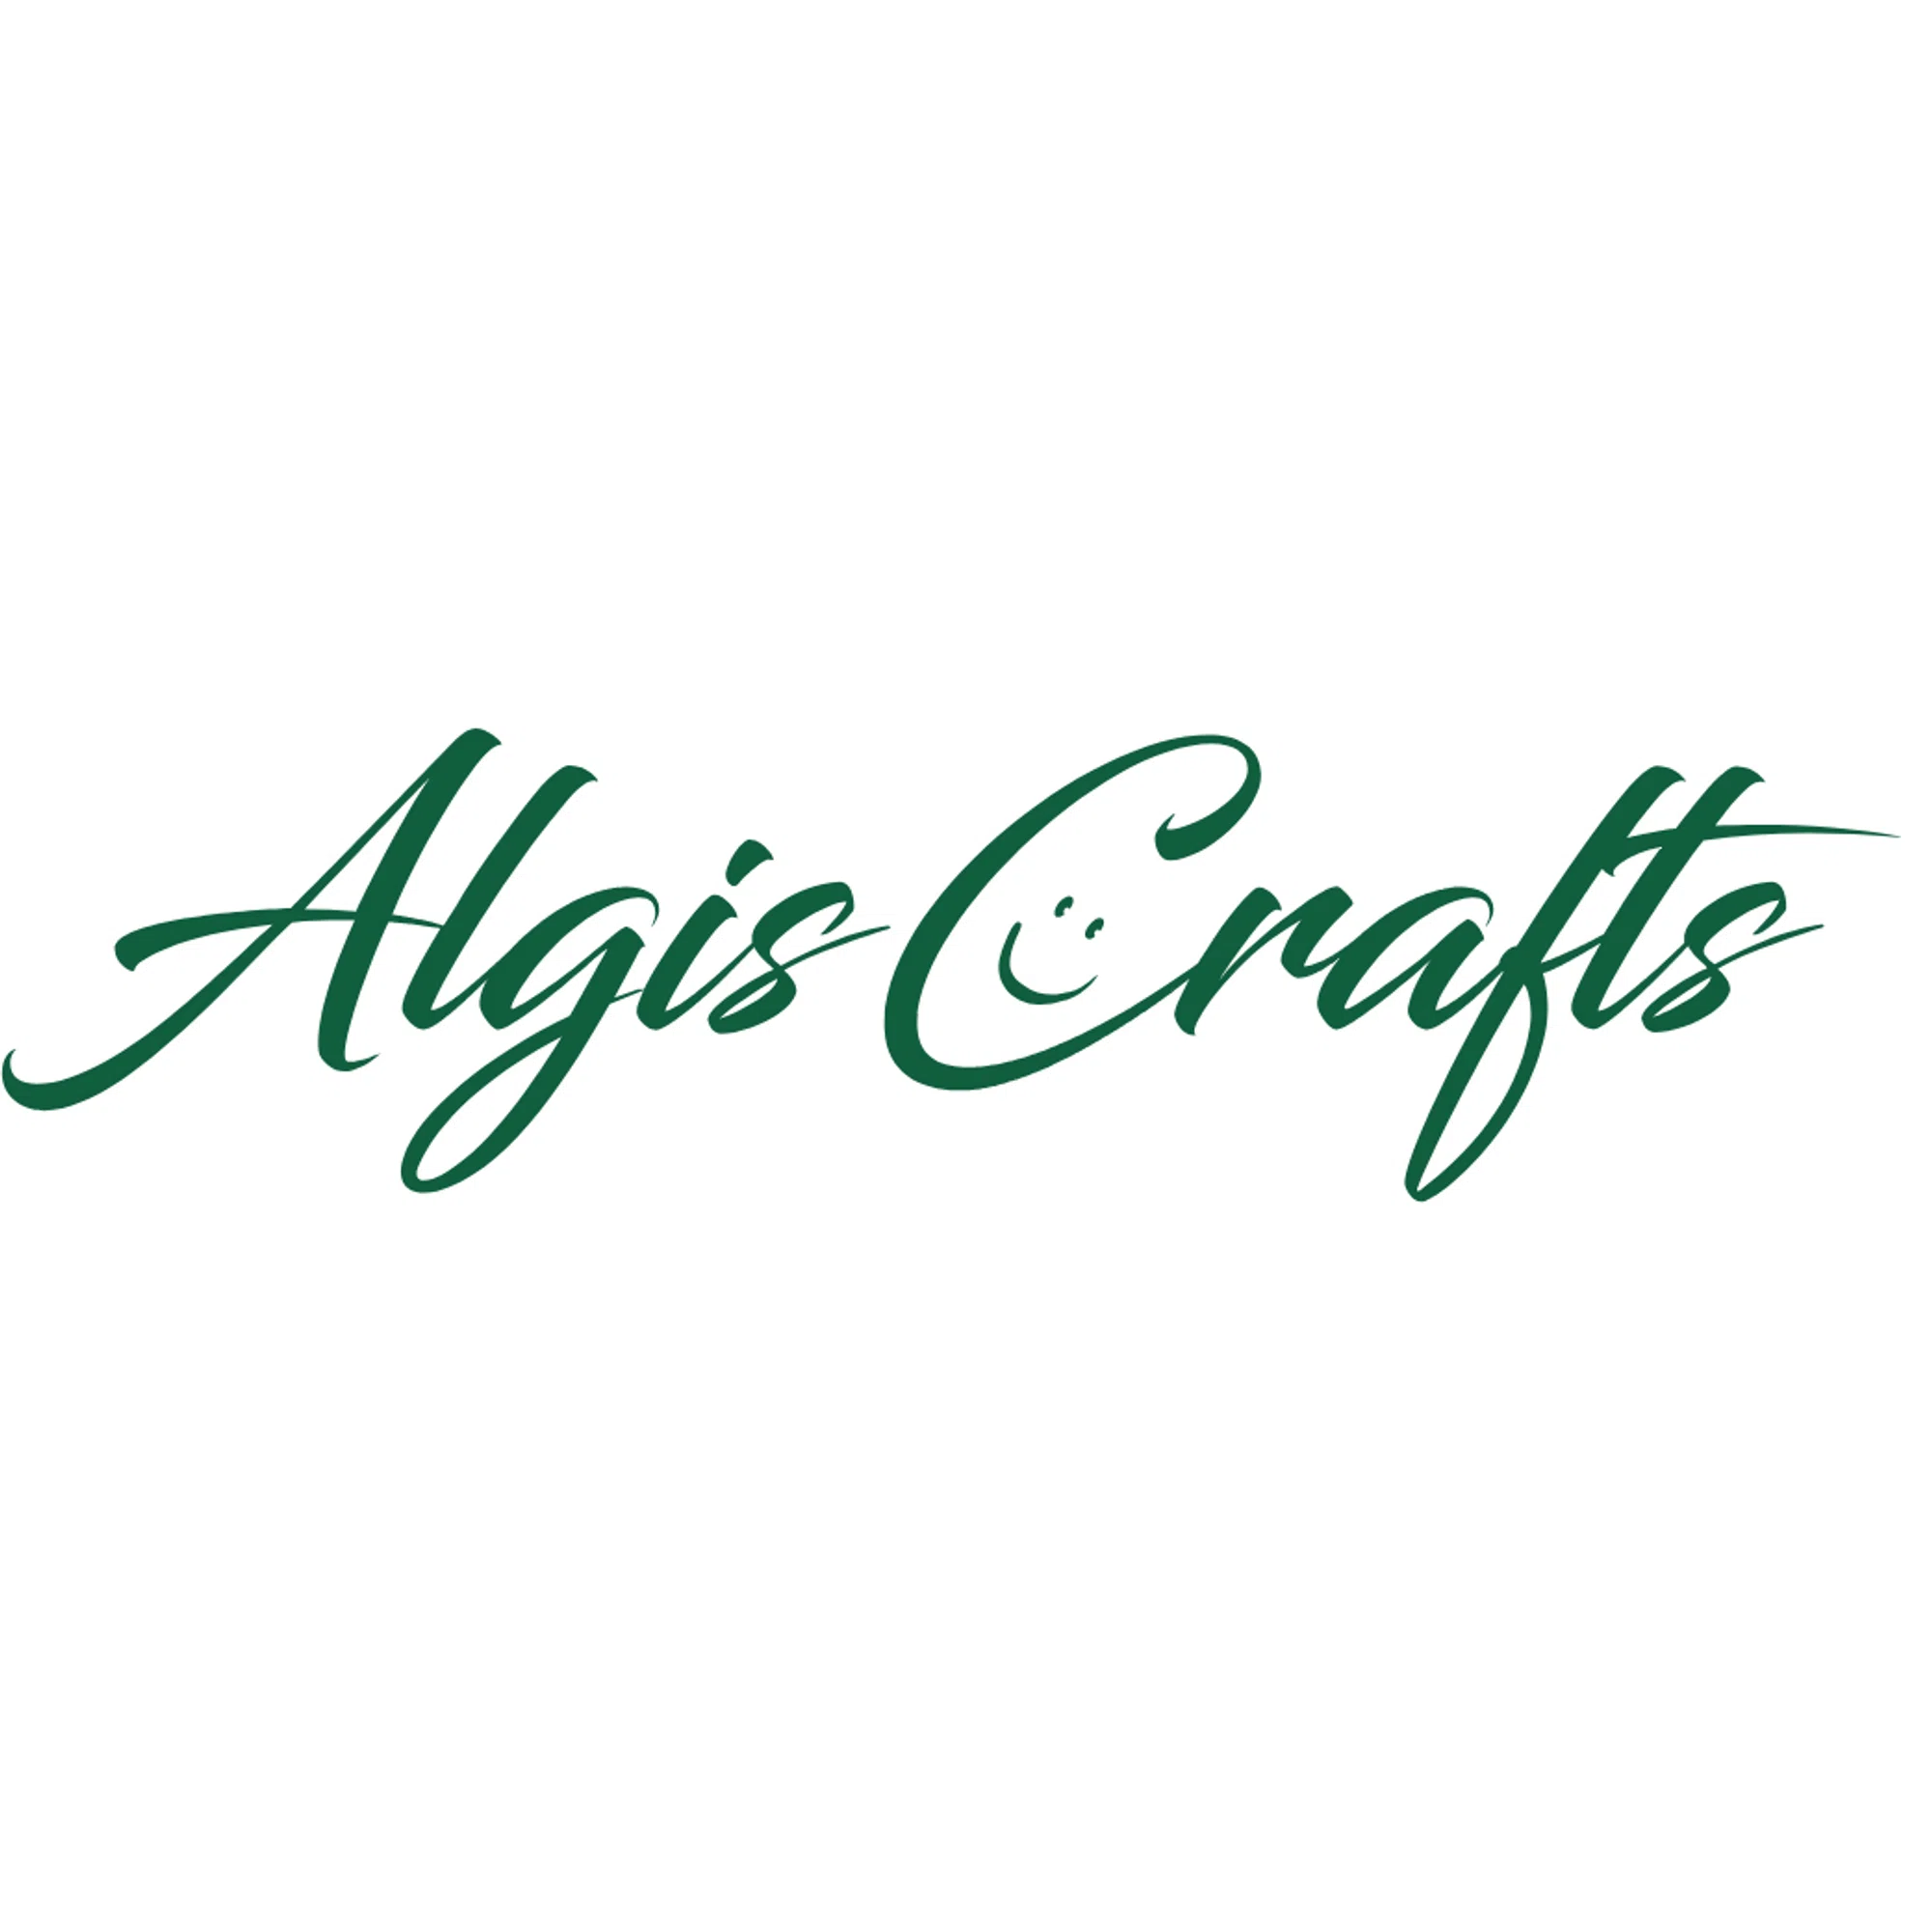 algiscrafts.com logo